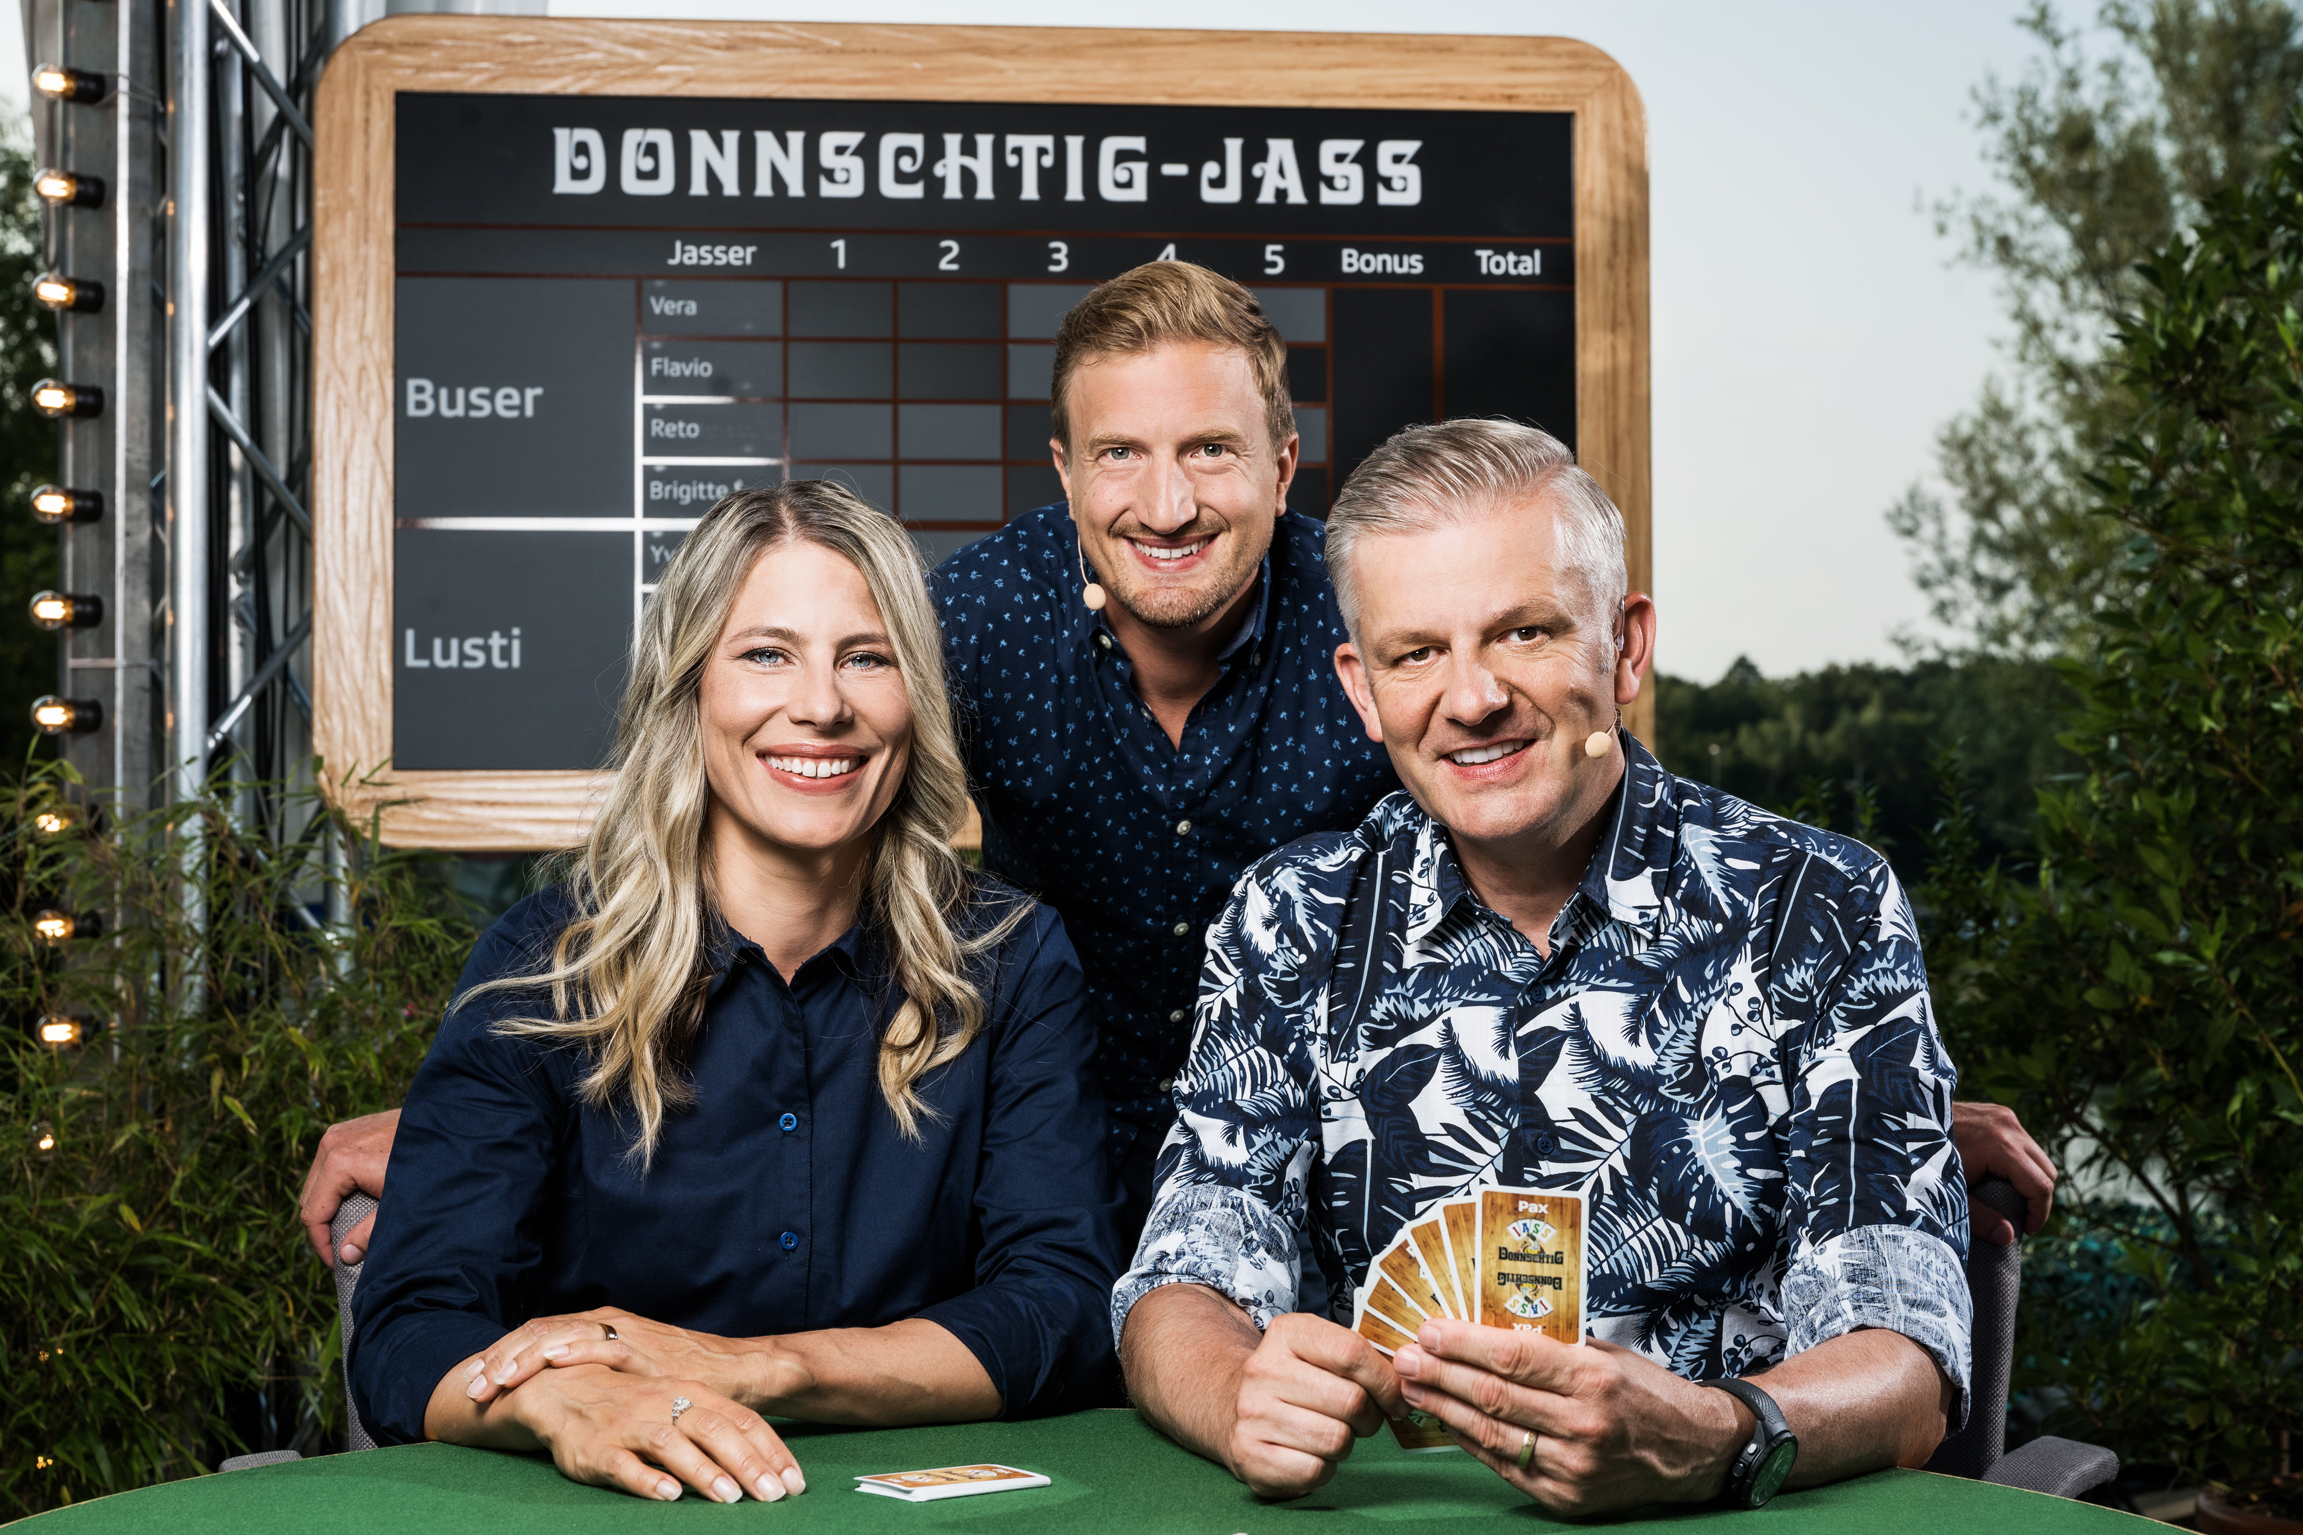 Donnschtig-Jass Das Moderationsteam: Sonia Kälin, Stefan Büsser und Rainer Maria Salzgeber 2021